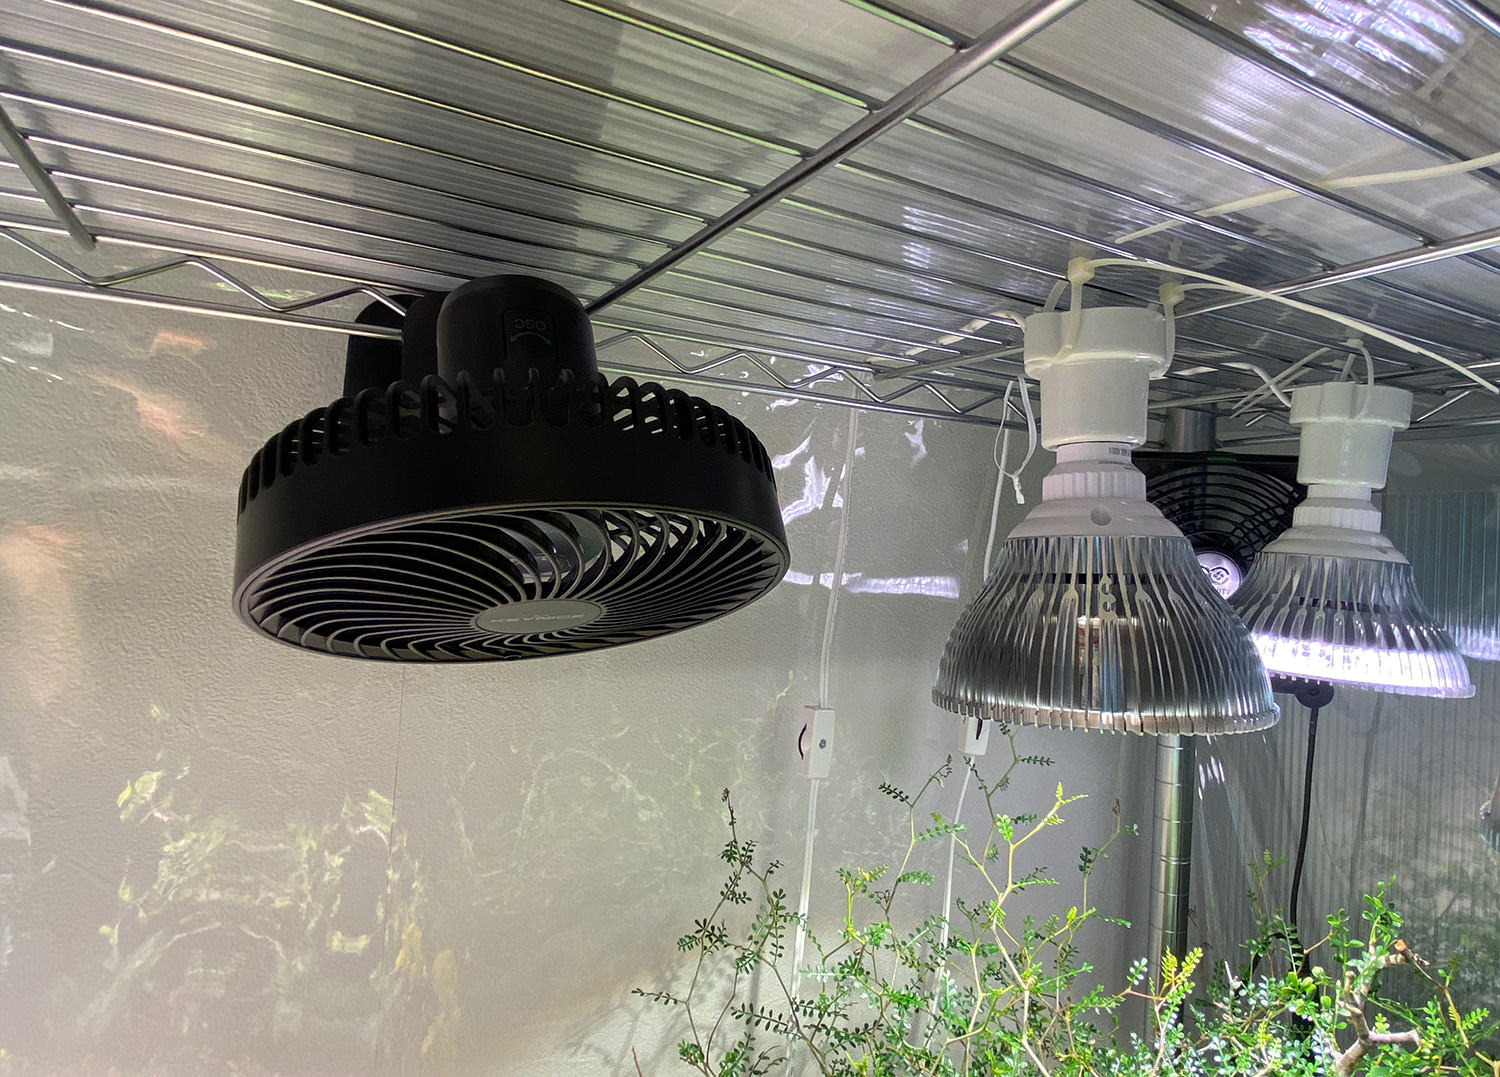 室内温室diy 自動首振り 機能付のusb扇風機 で空気循環を効率化 類似製品２種比較レビュー